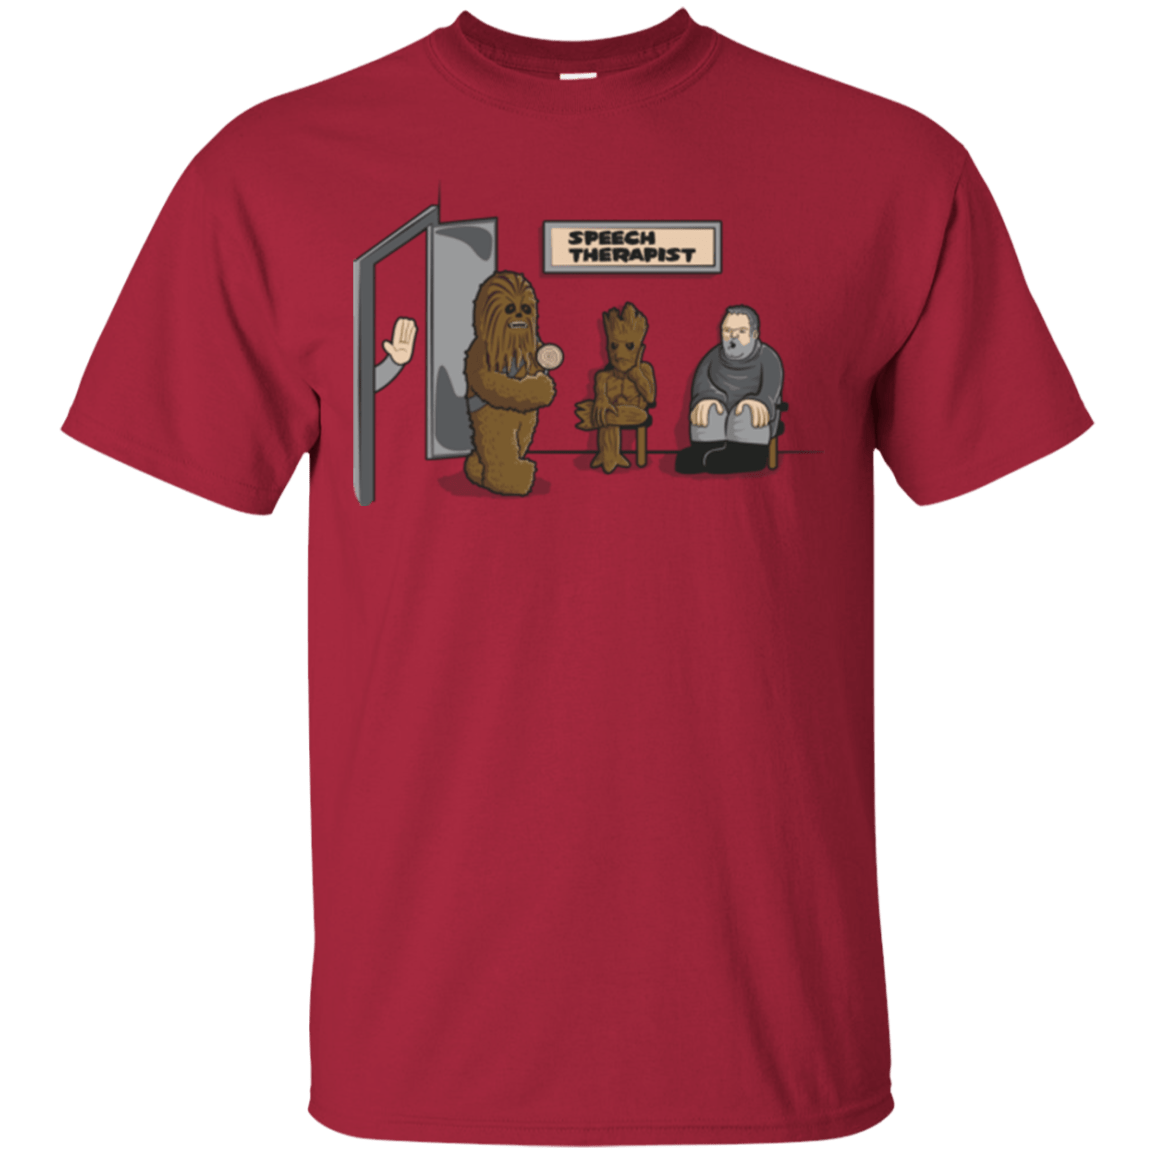 T-Shirts Cardinal / S Speech Therapist T-Shirt